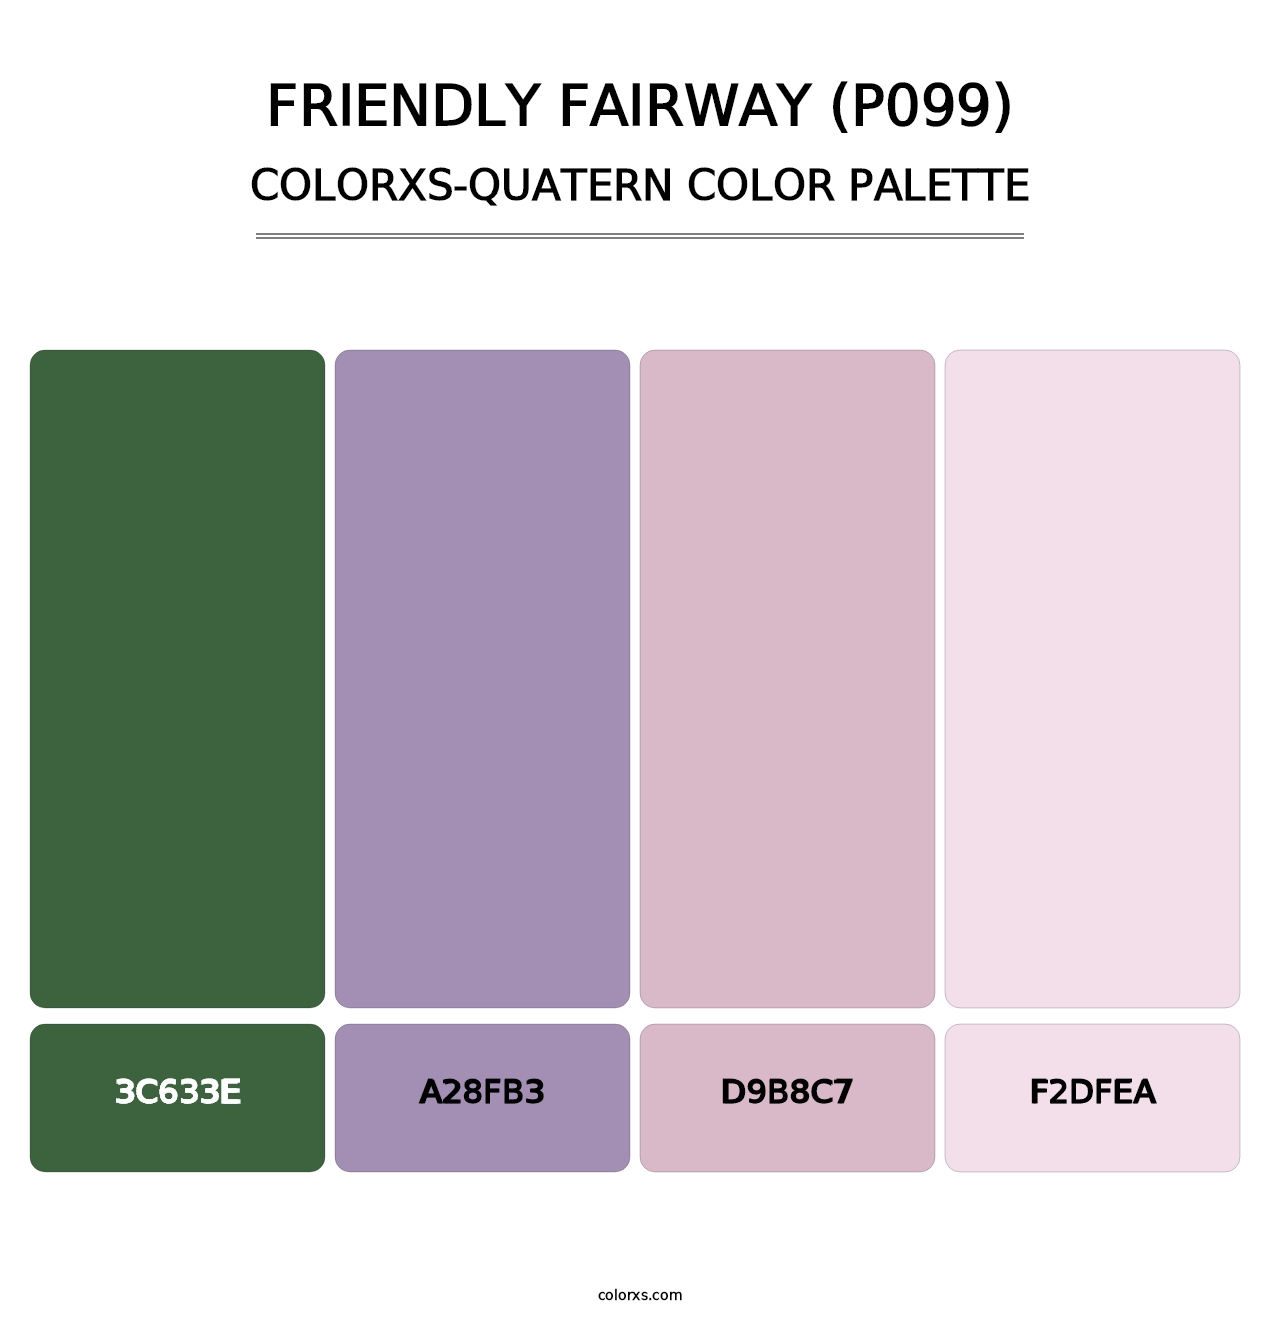 Friendly Fairway (P099) - Colorxs Quatern Palette